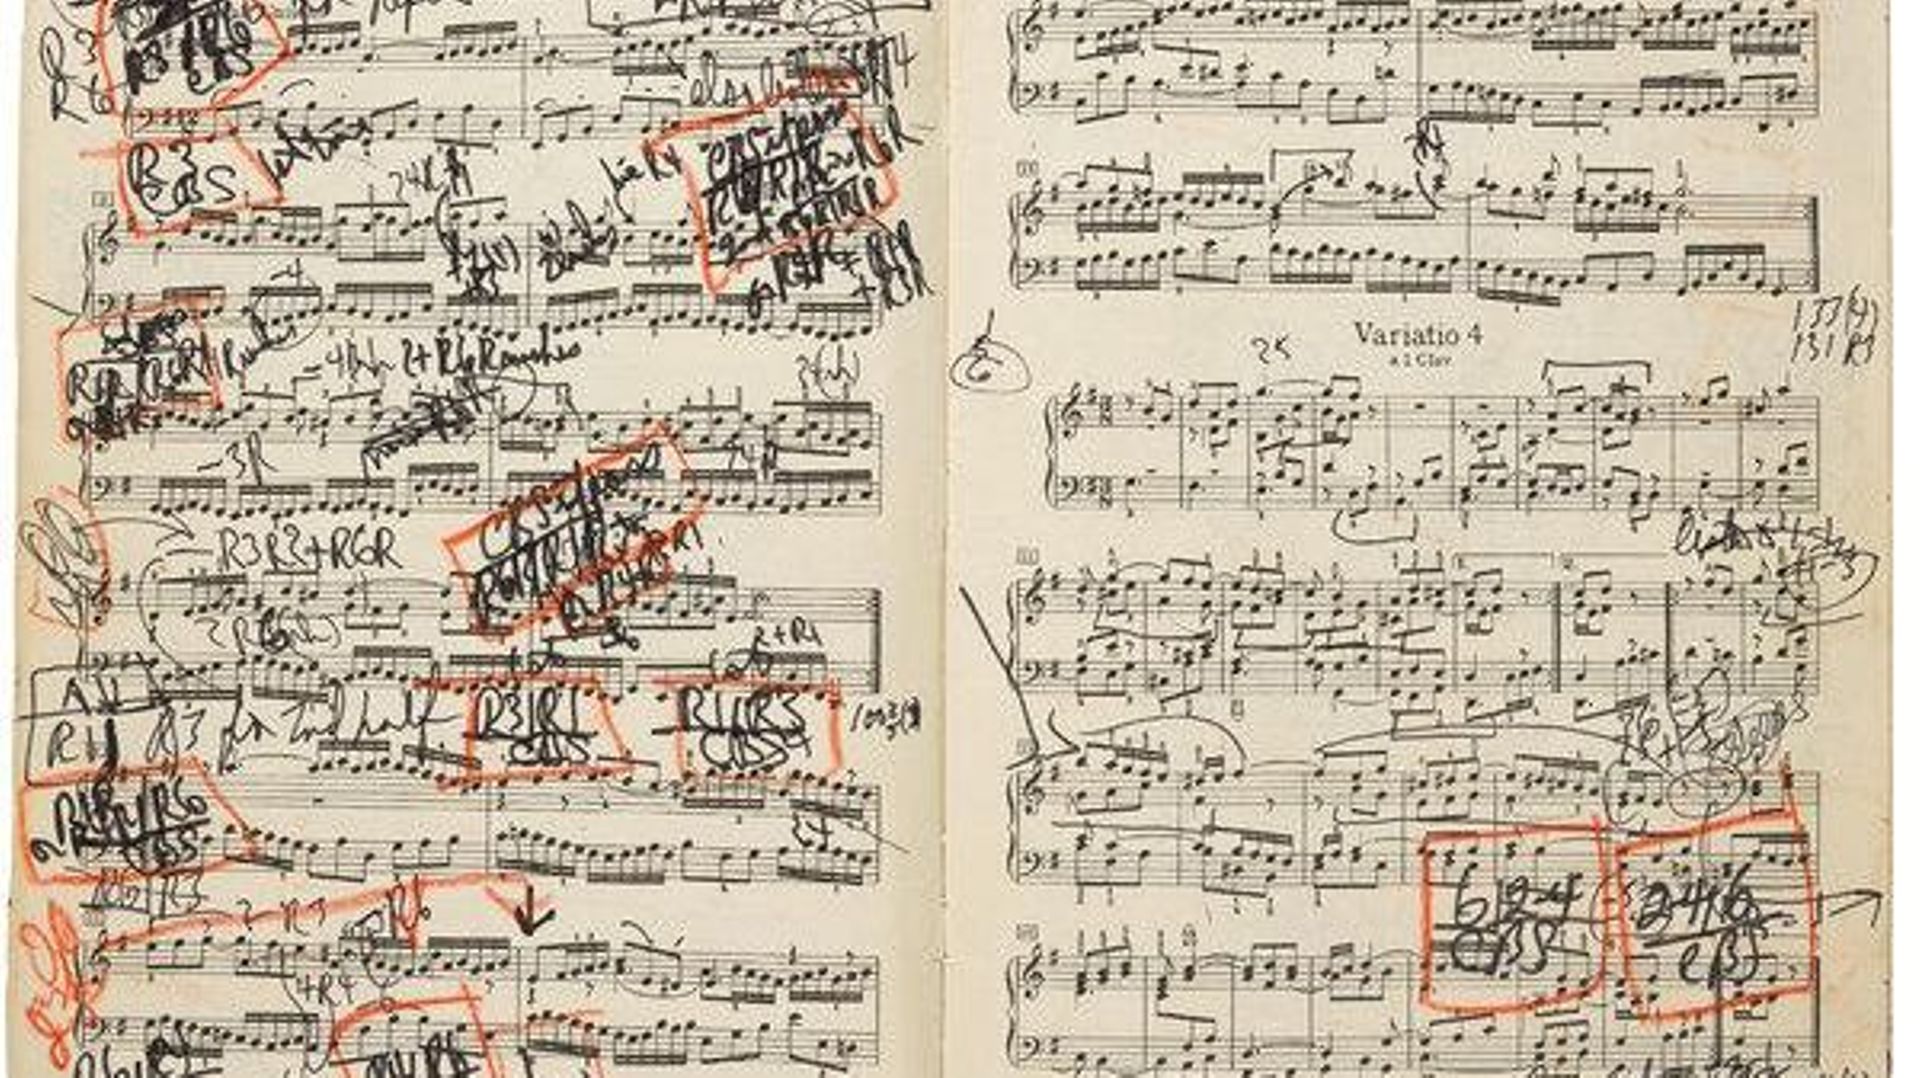 Le pianiste canadien Glenn Gould a laissé de nombreuses annotations sur la partition des Variations Goldberg de Bach, utilisée lors de son enregistrement de 1981. 